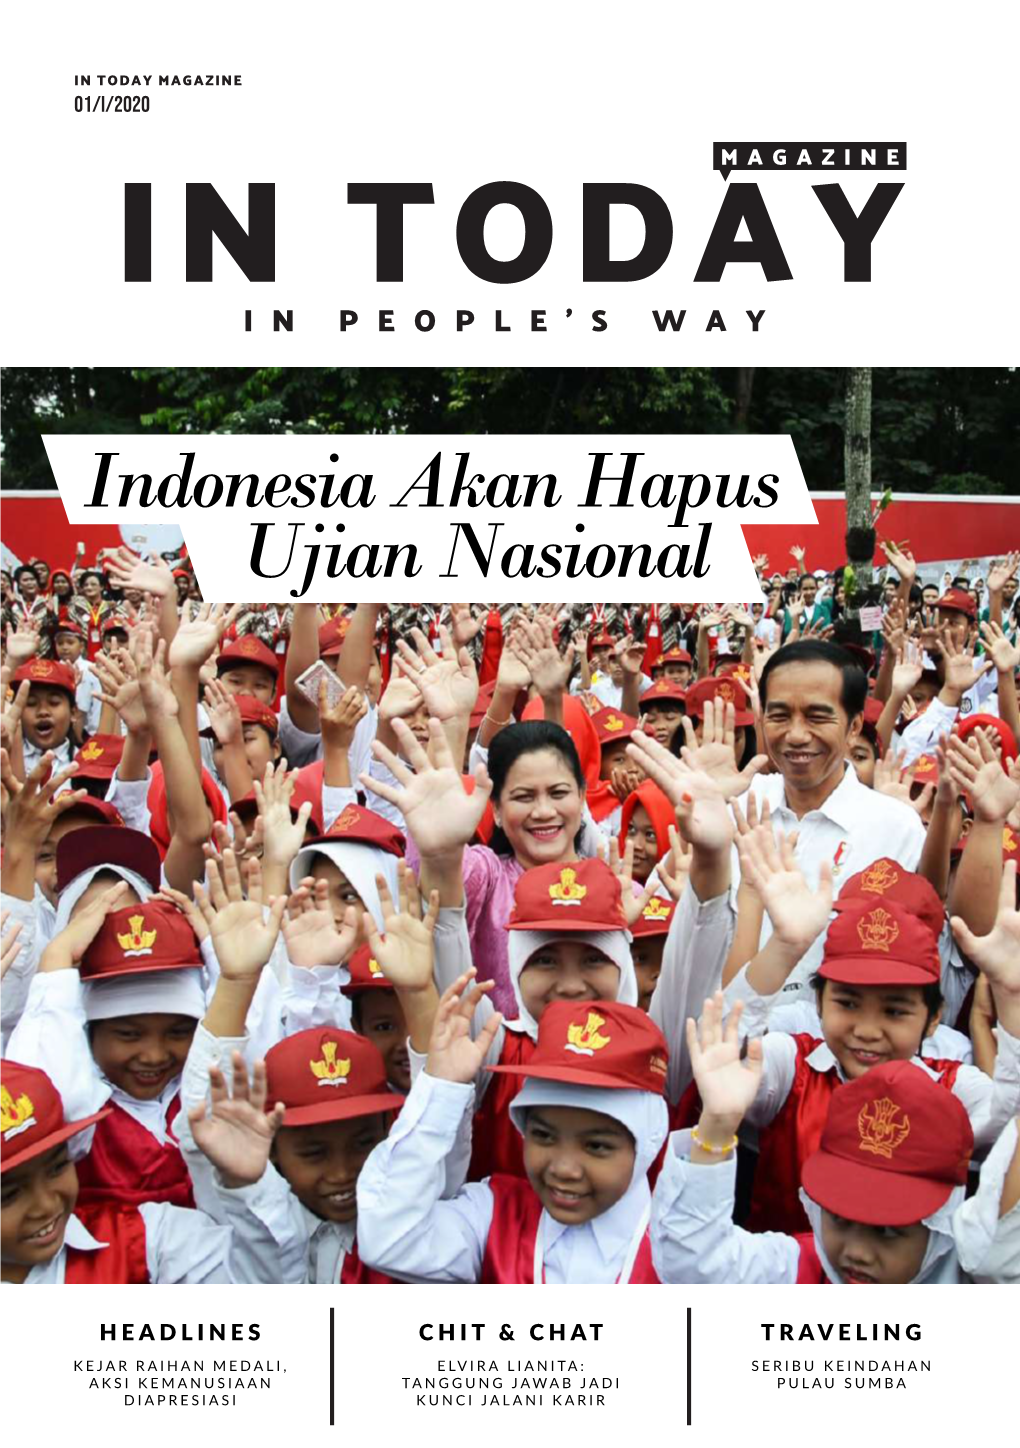 Ujian Nasional Indonesia Akan Hapus